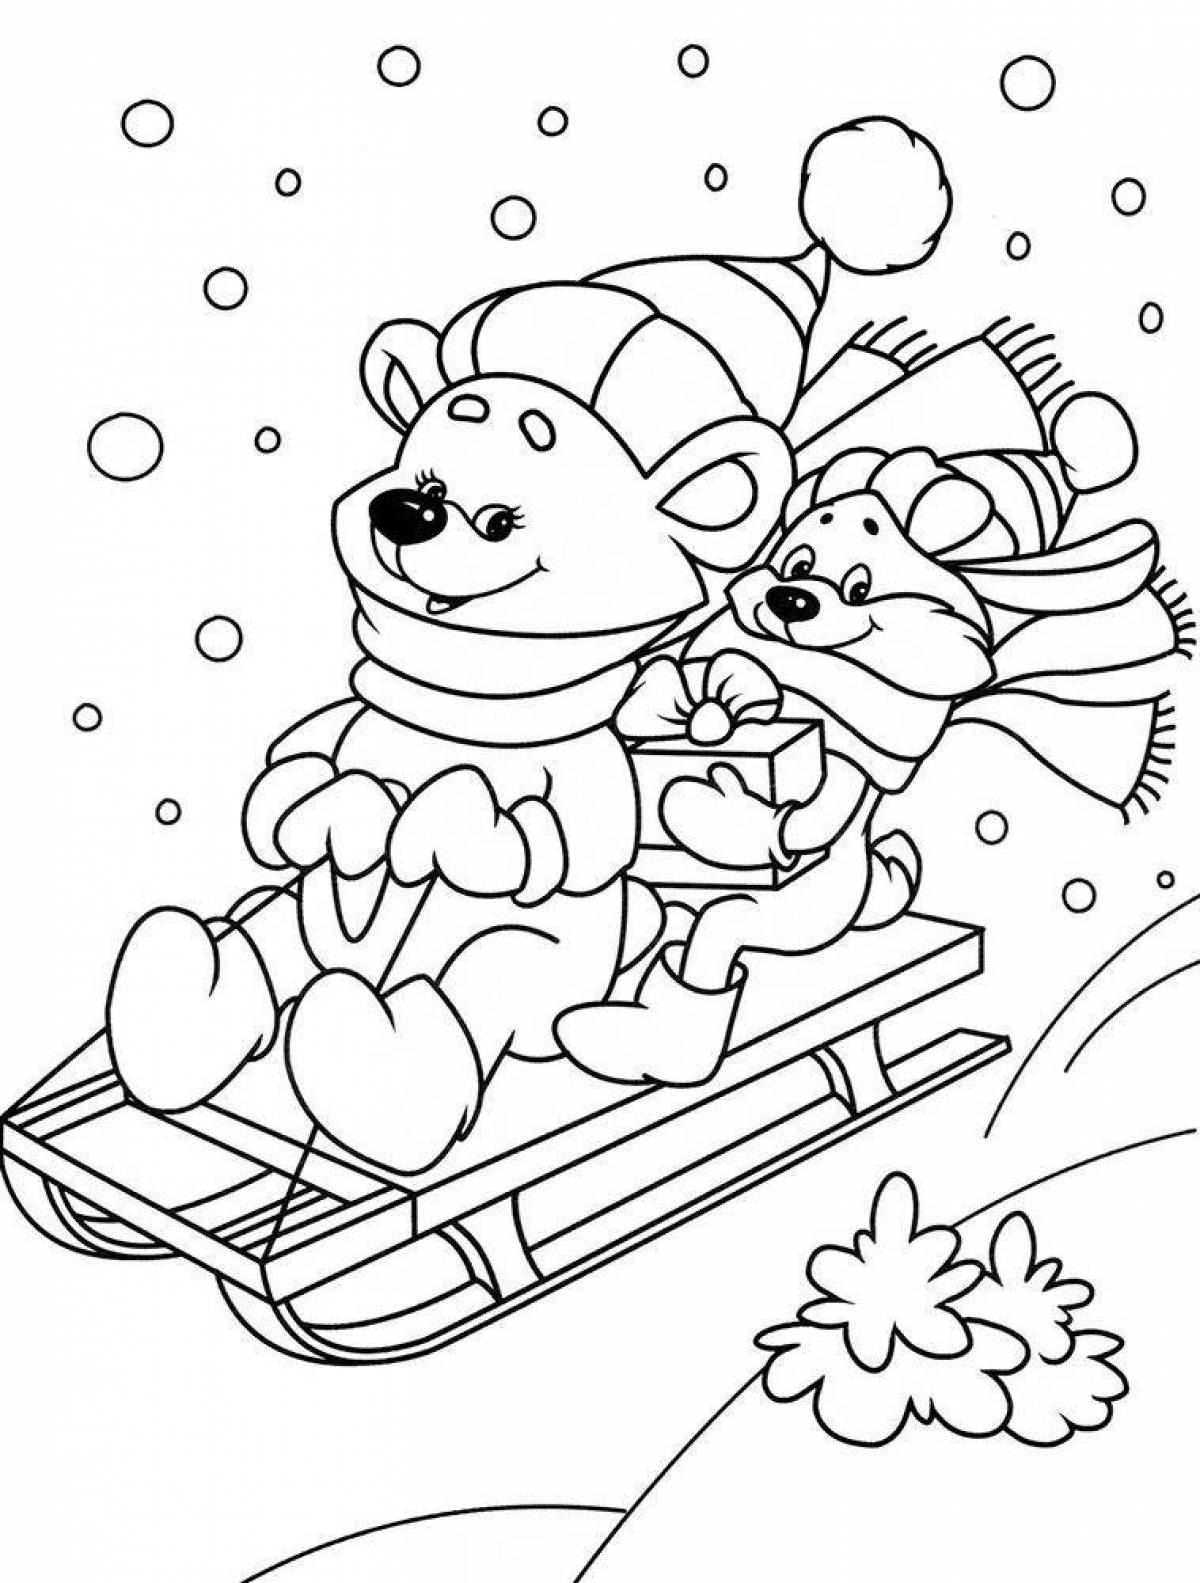 Сказочная раскраска зима для детей 5 лет